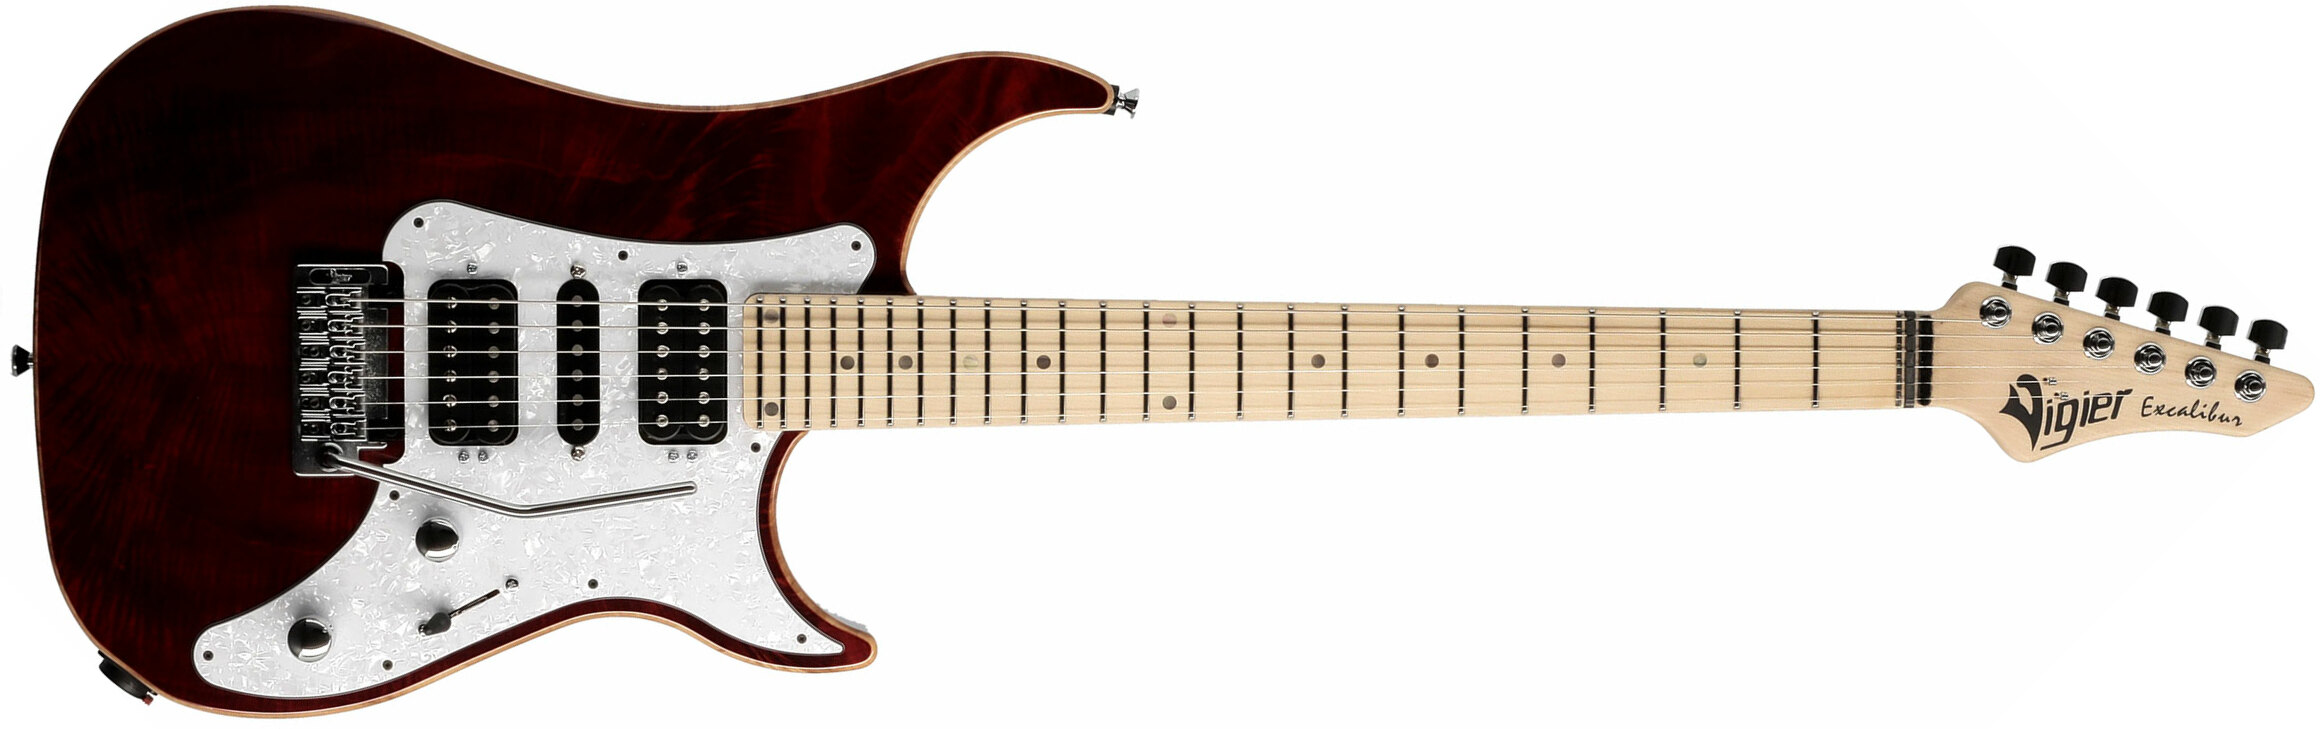 Vigier Excalibur Special Hsh Trem Mn - Ruby - Elektrische gitaar in Str-vorm - Main picture